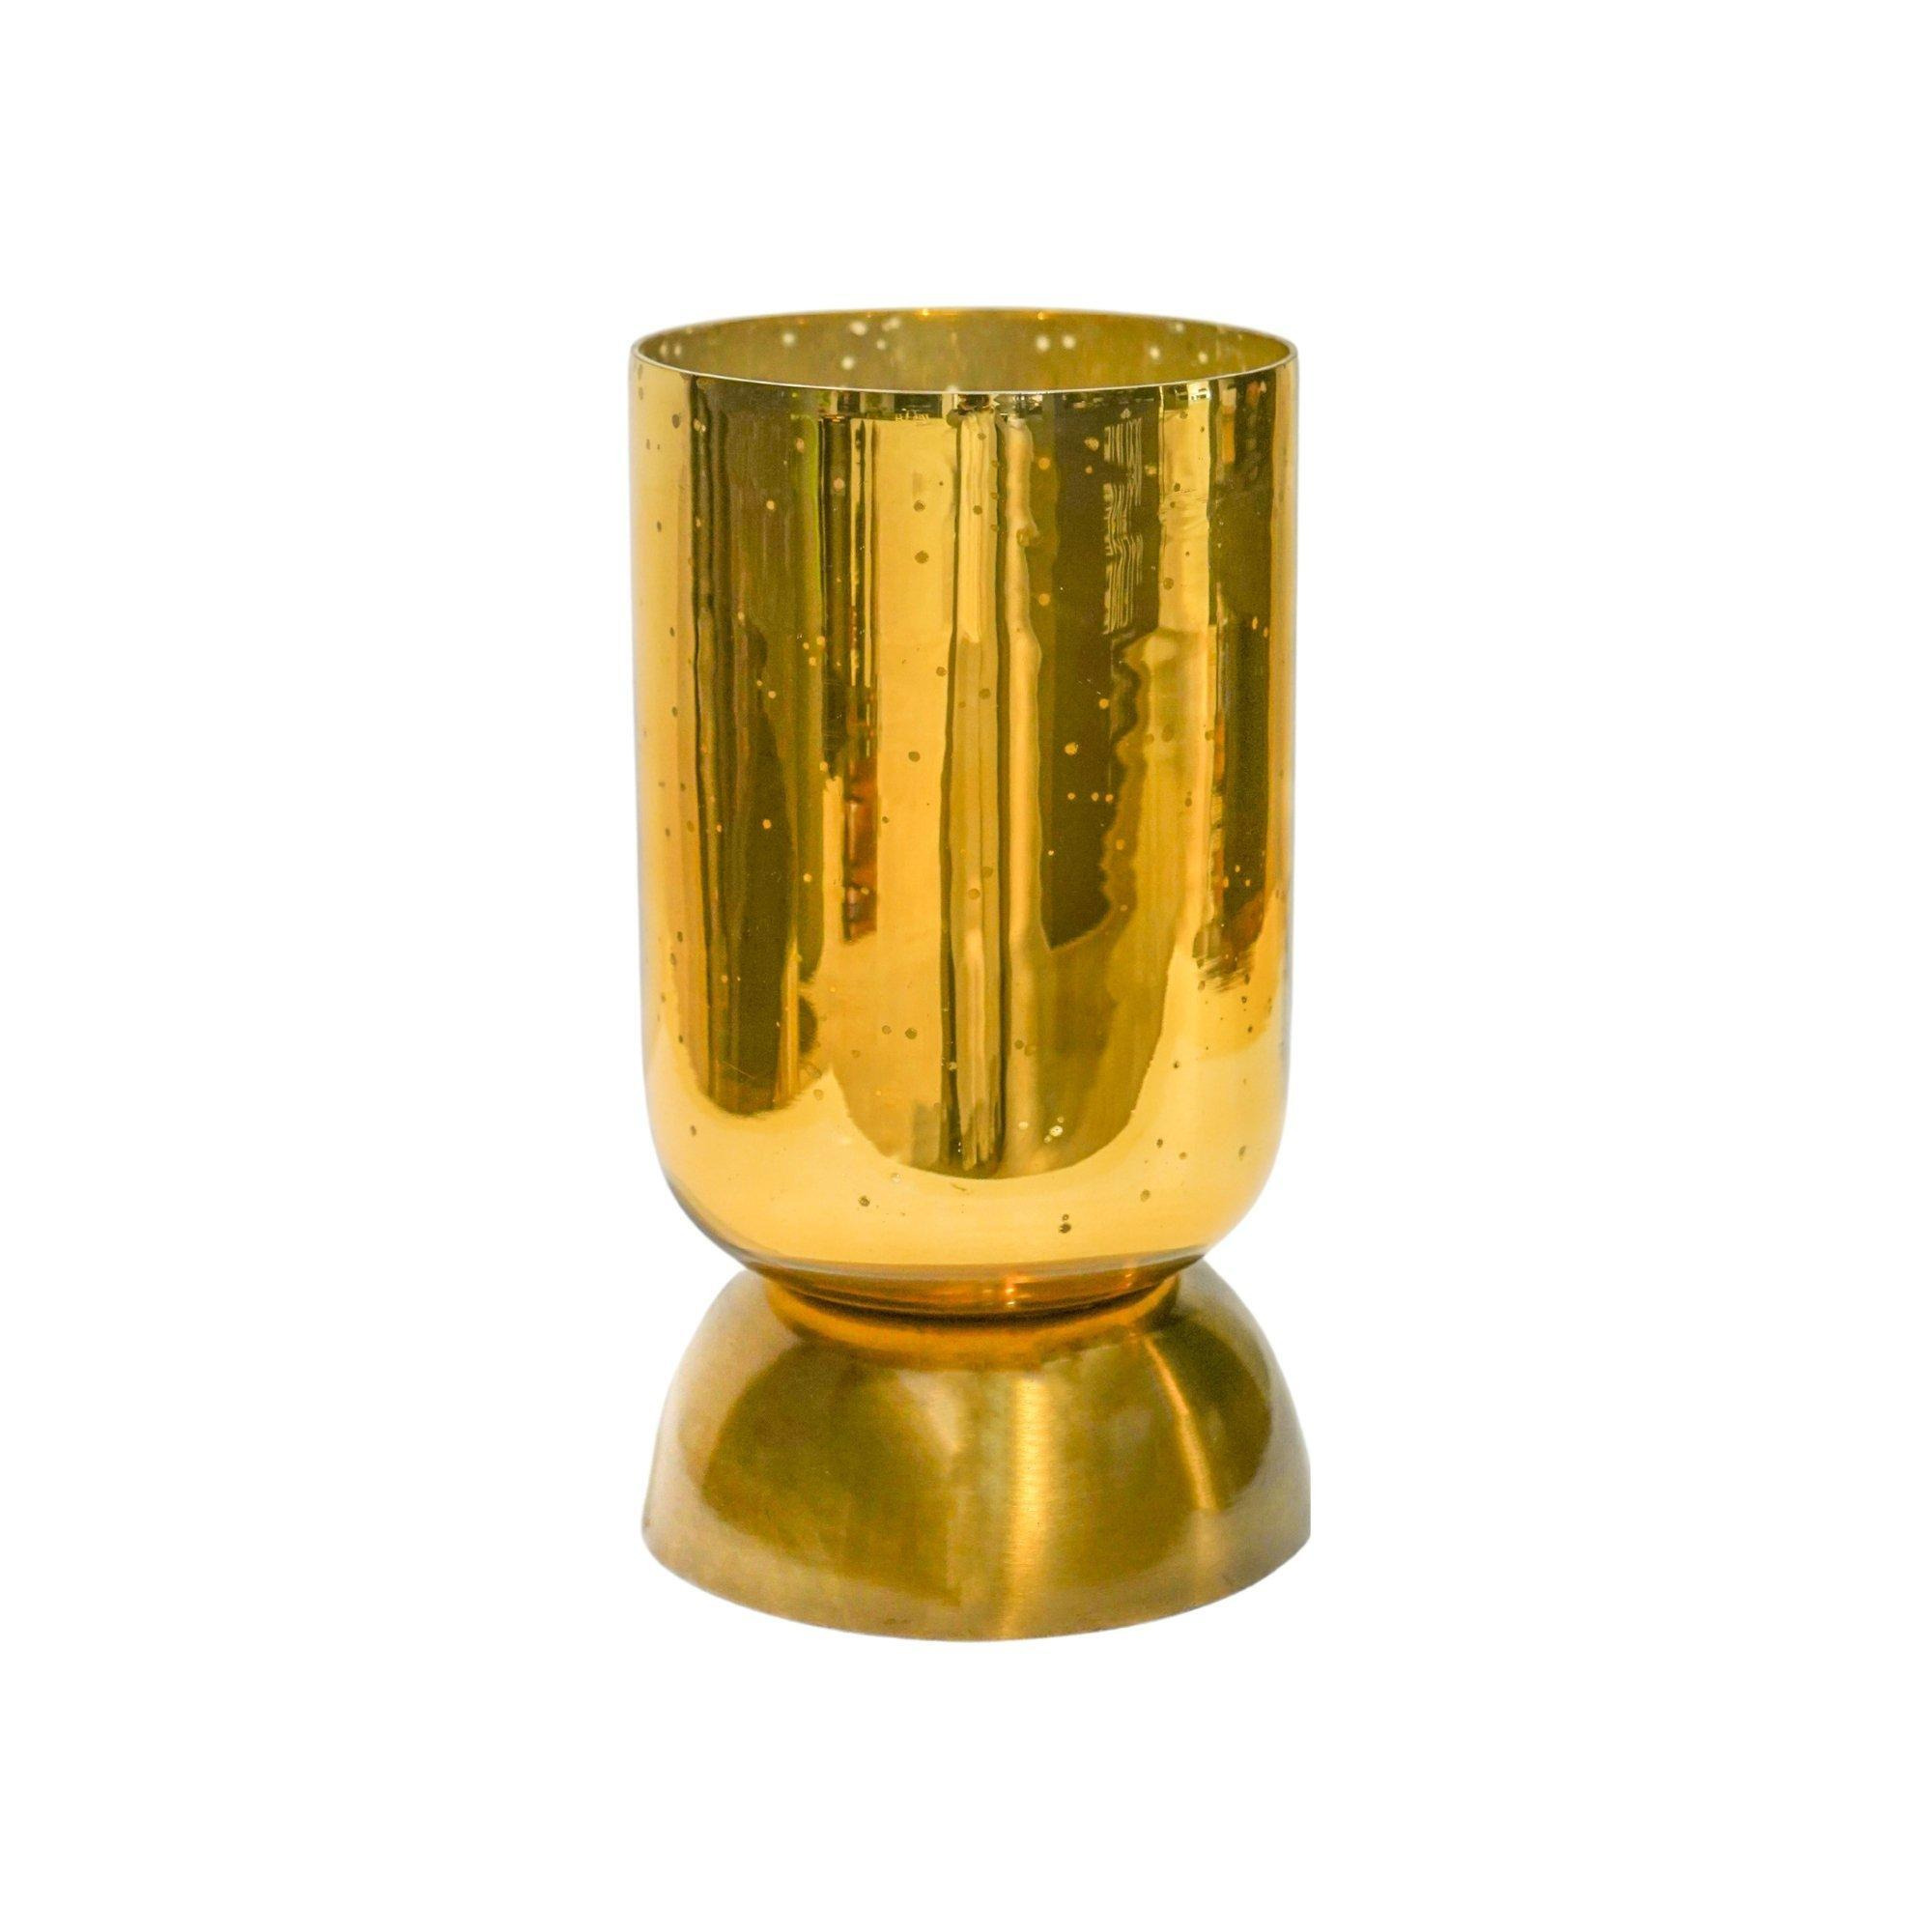 Regency Metalic Tiered Vase Gold H27.5cm D15cm - image 1